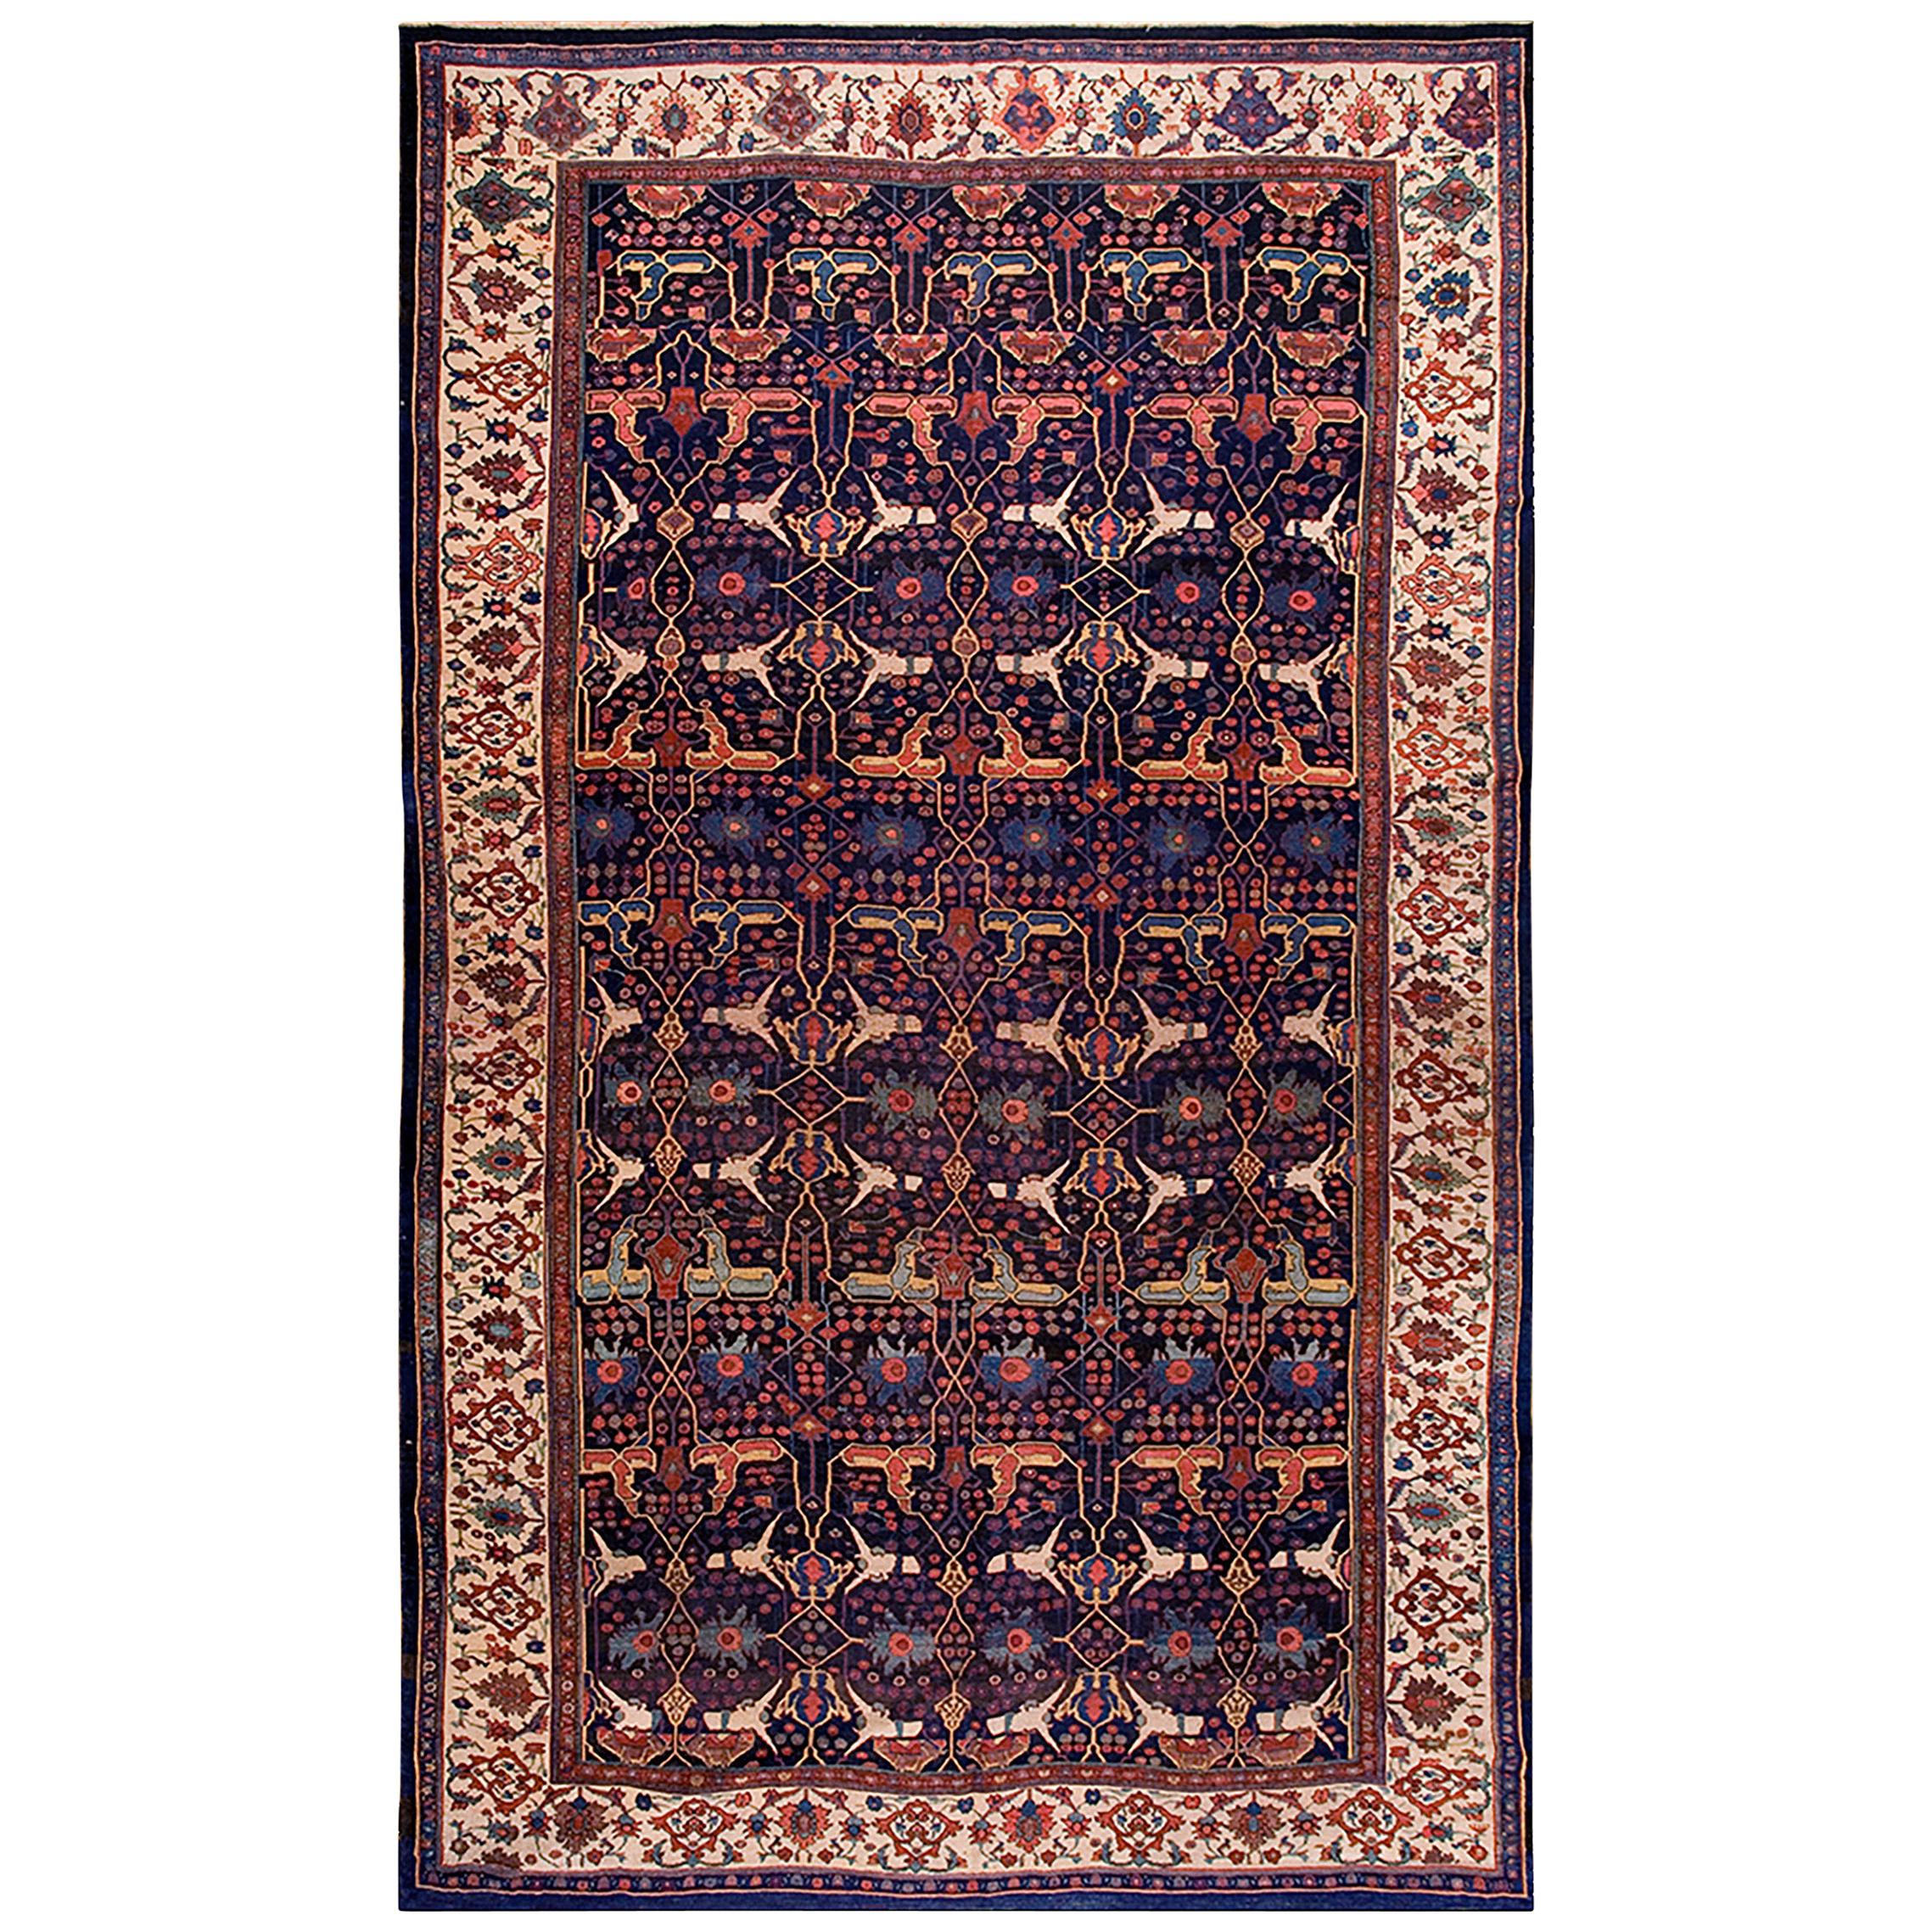 19th Century W. Persian Bijar Garrus Carpet ( 11'3" x 18'10" - 343 x 575 ) For Sale